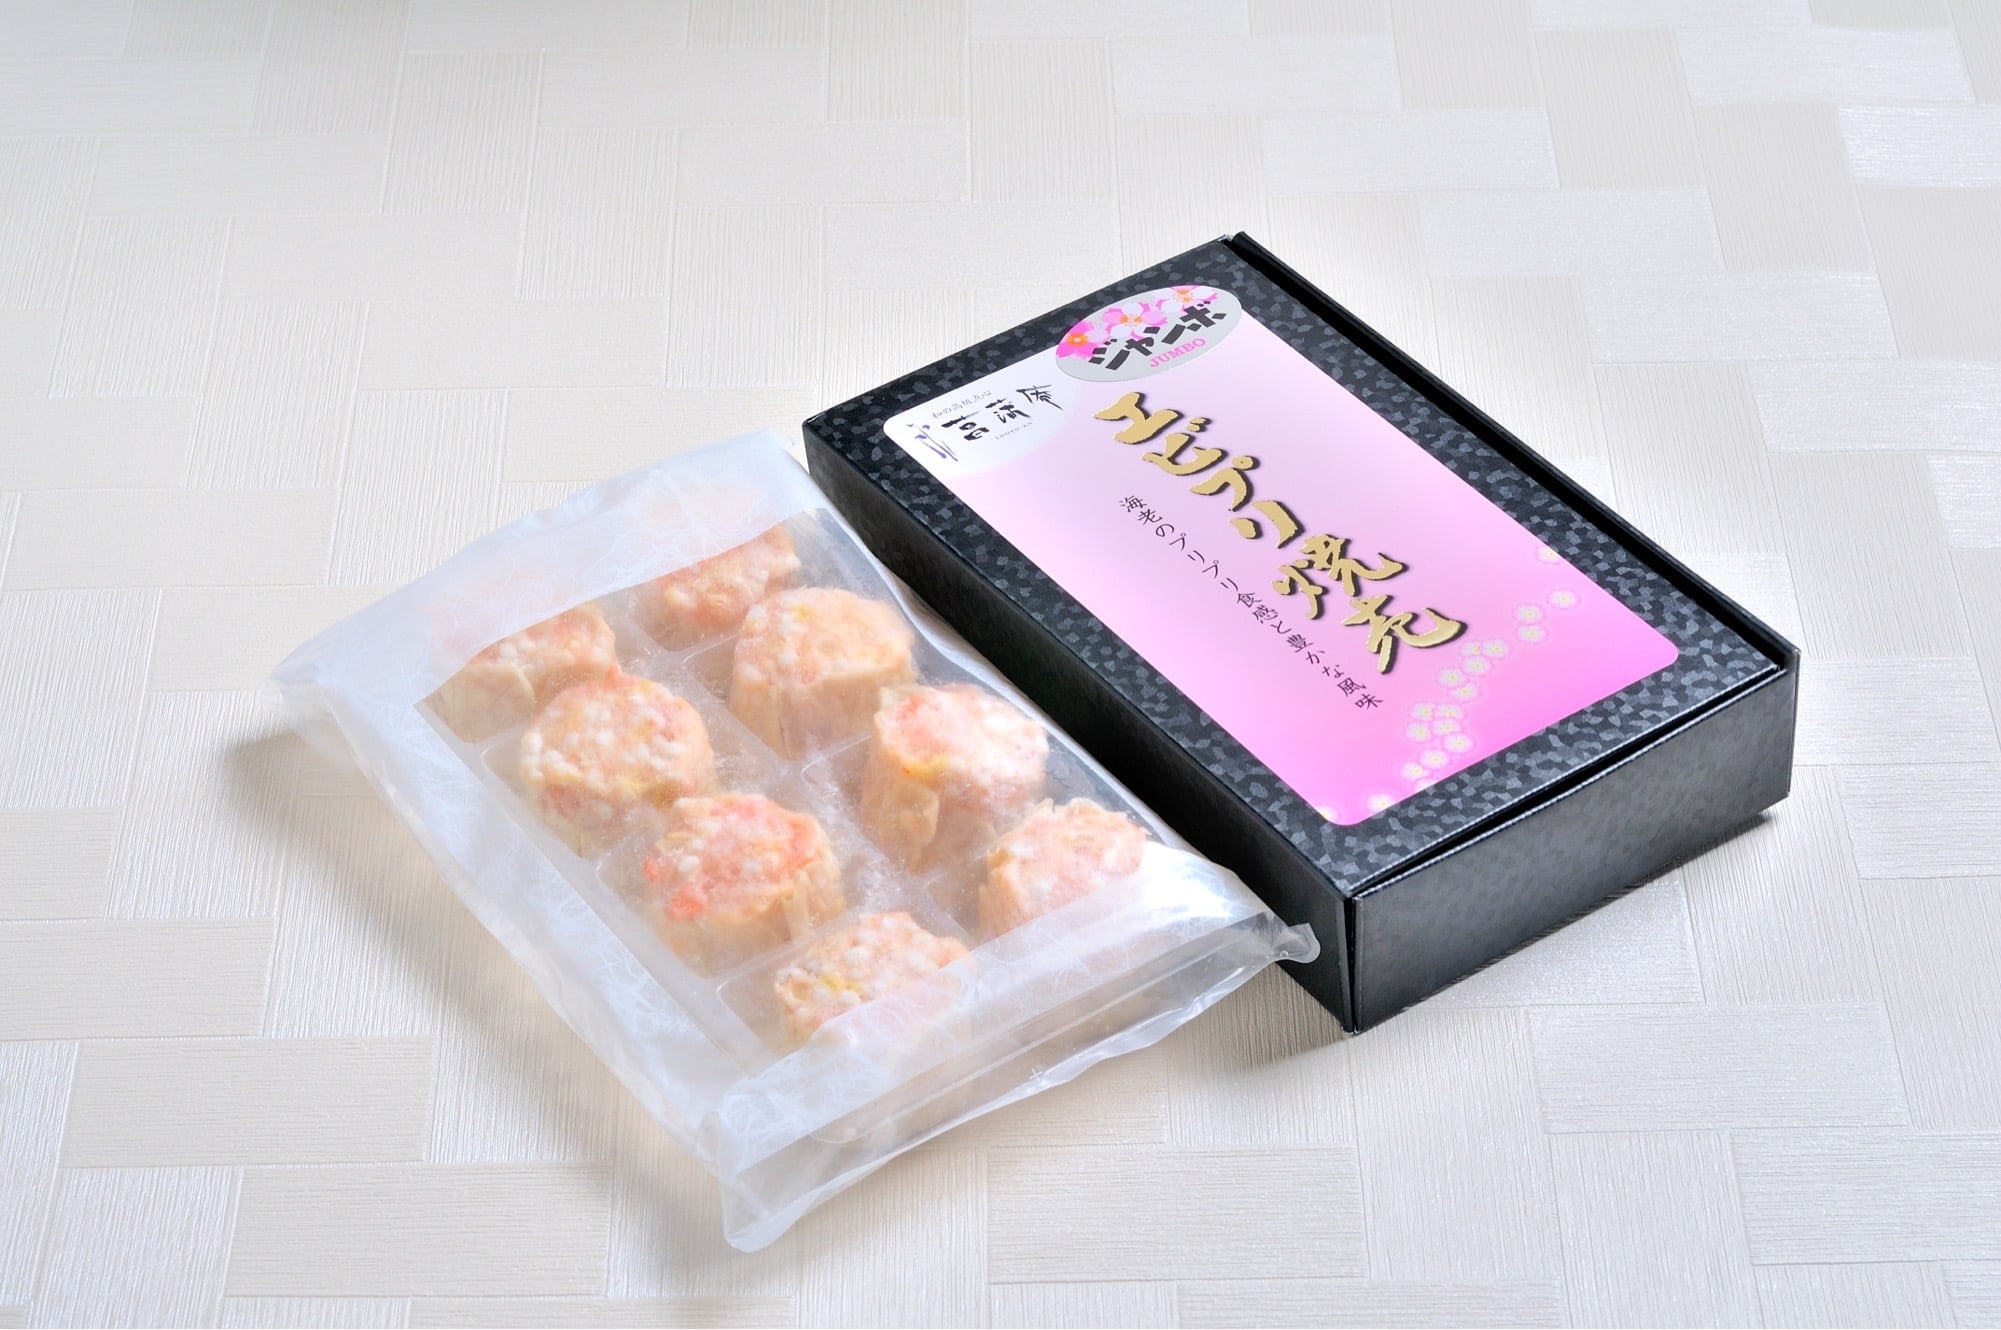 【ギフト用】人気!エビプリ焼売40g×8個入/新鮮なムキエビをたっぷり贅沢に使用